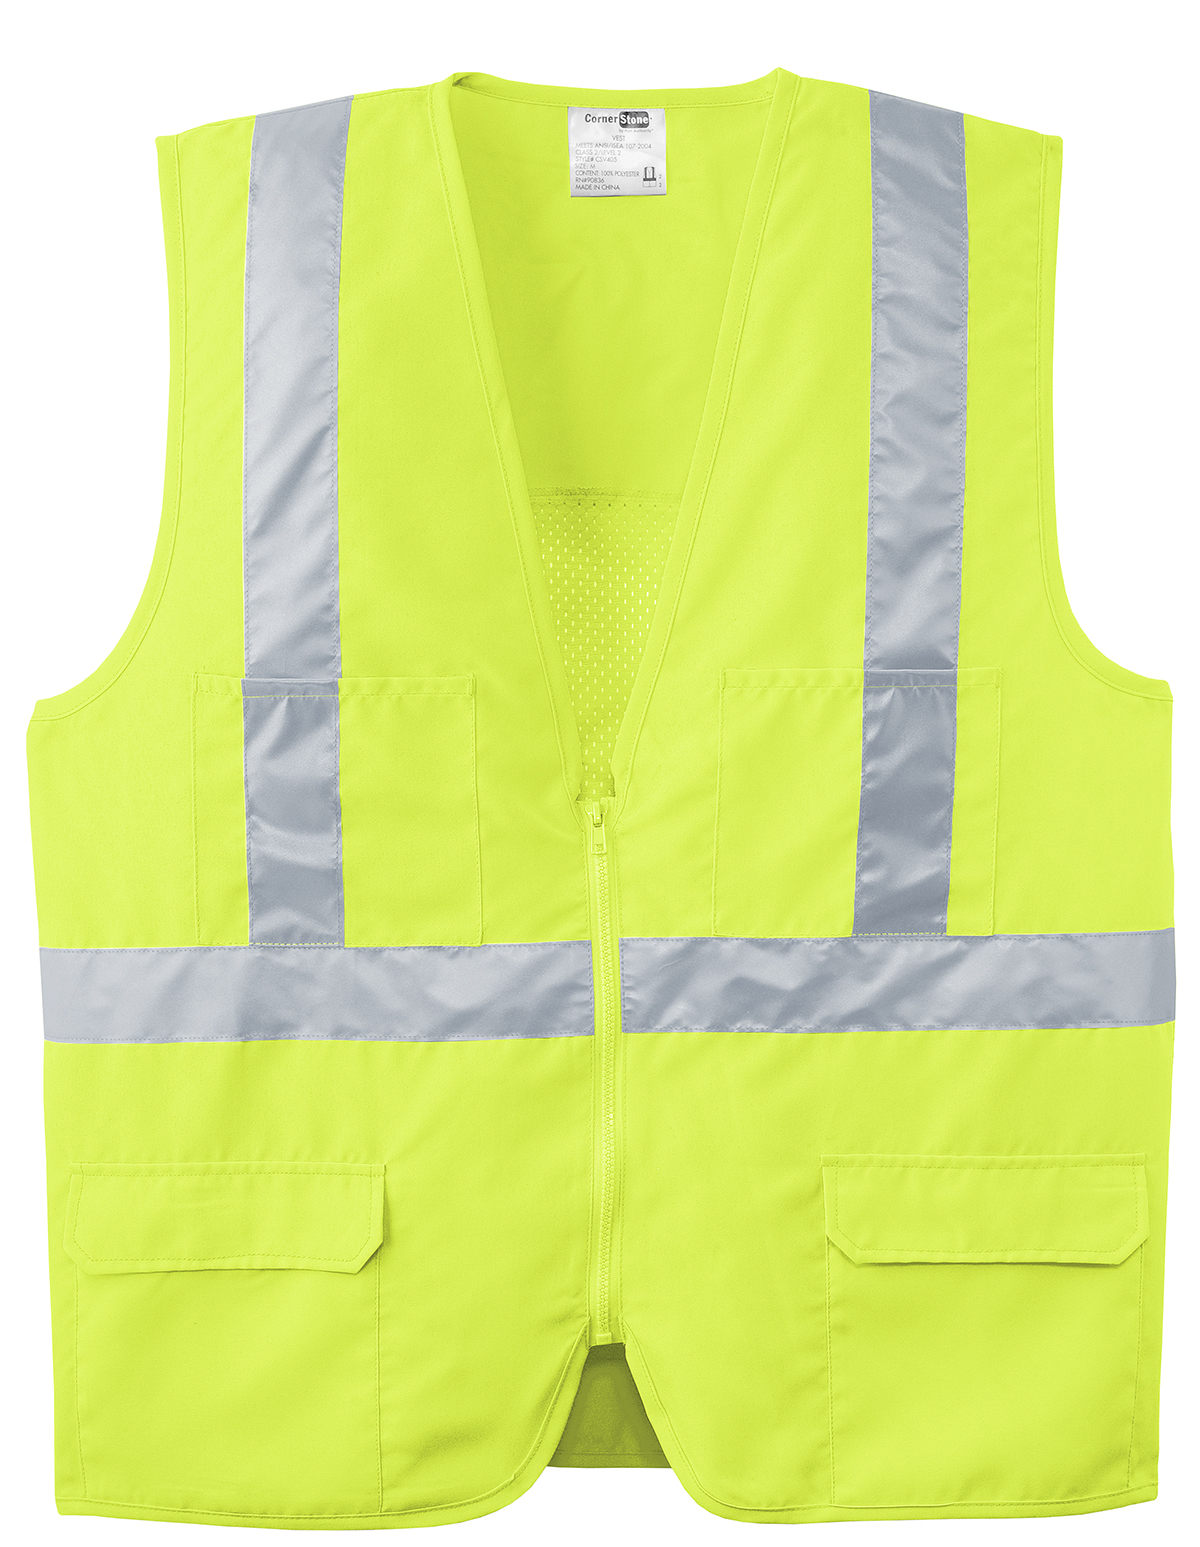 CornerStone - ANSI 107 Class 2 Mesh Back Safety Vest | Product 